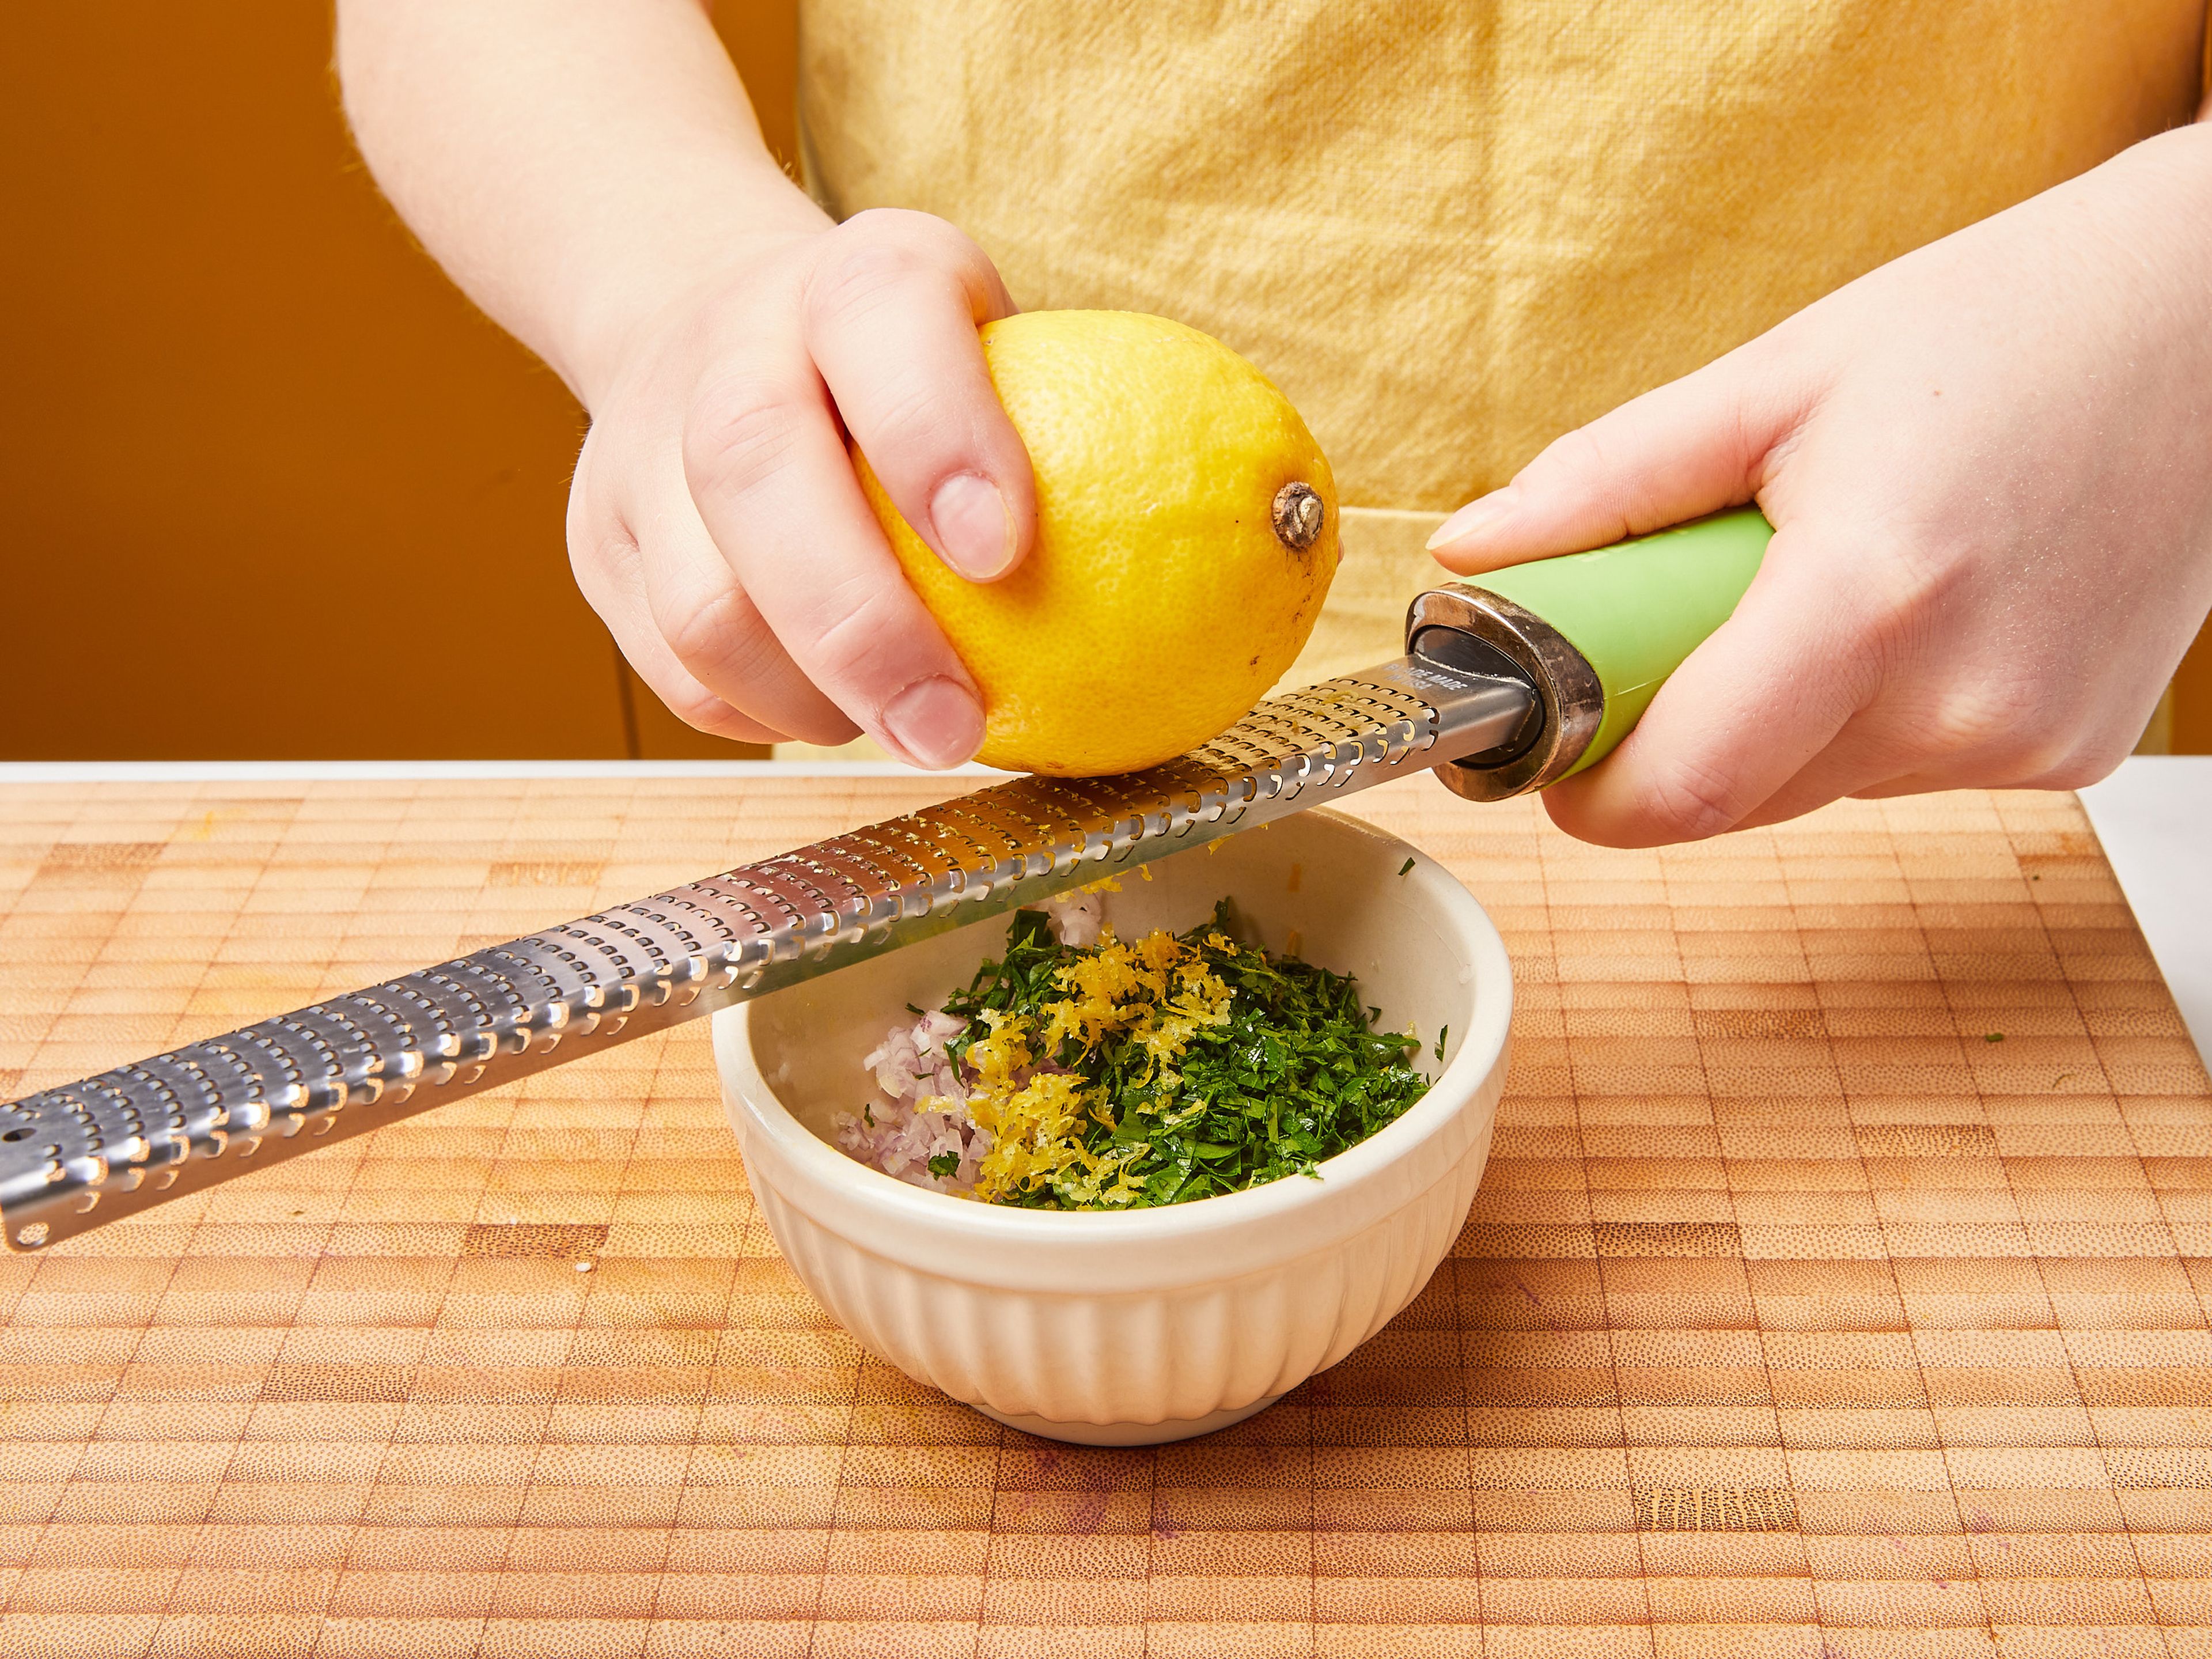 Während der Blumenkohl kocht, die Gremolata zubereiten. Die Schalotte fein würfeln, dann die Petersilie hacken. Die Zitrone abreiben und auspressen. Dann alles in eine Schüssel geben, zusammen mit der restlichen Orangenschale und dem restlichen Olivenöl. Gut vermischen.